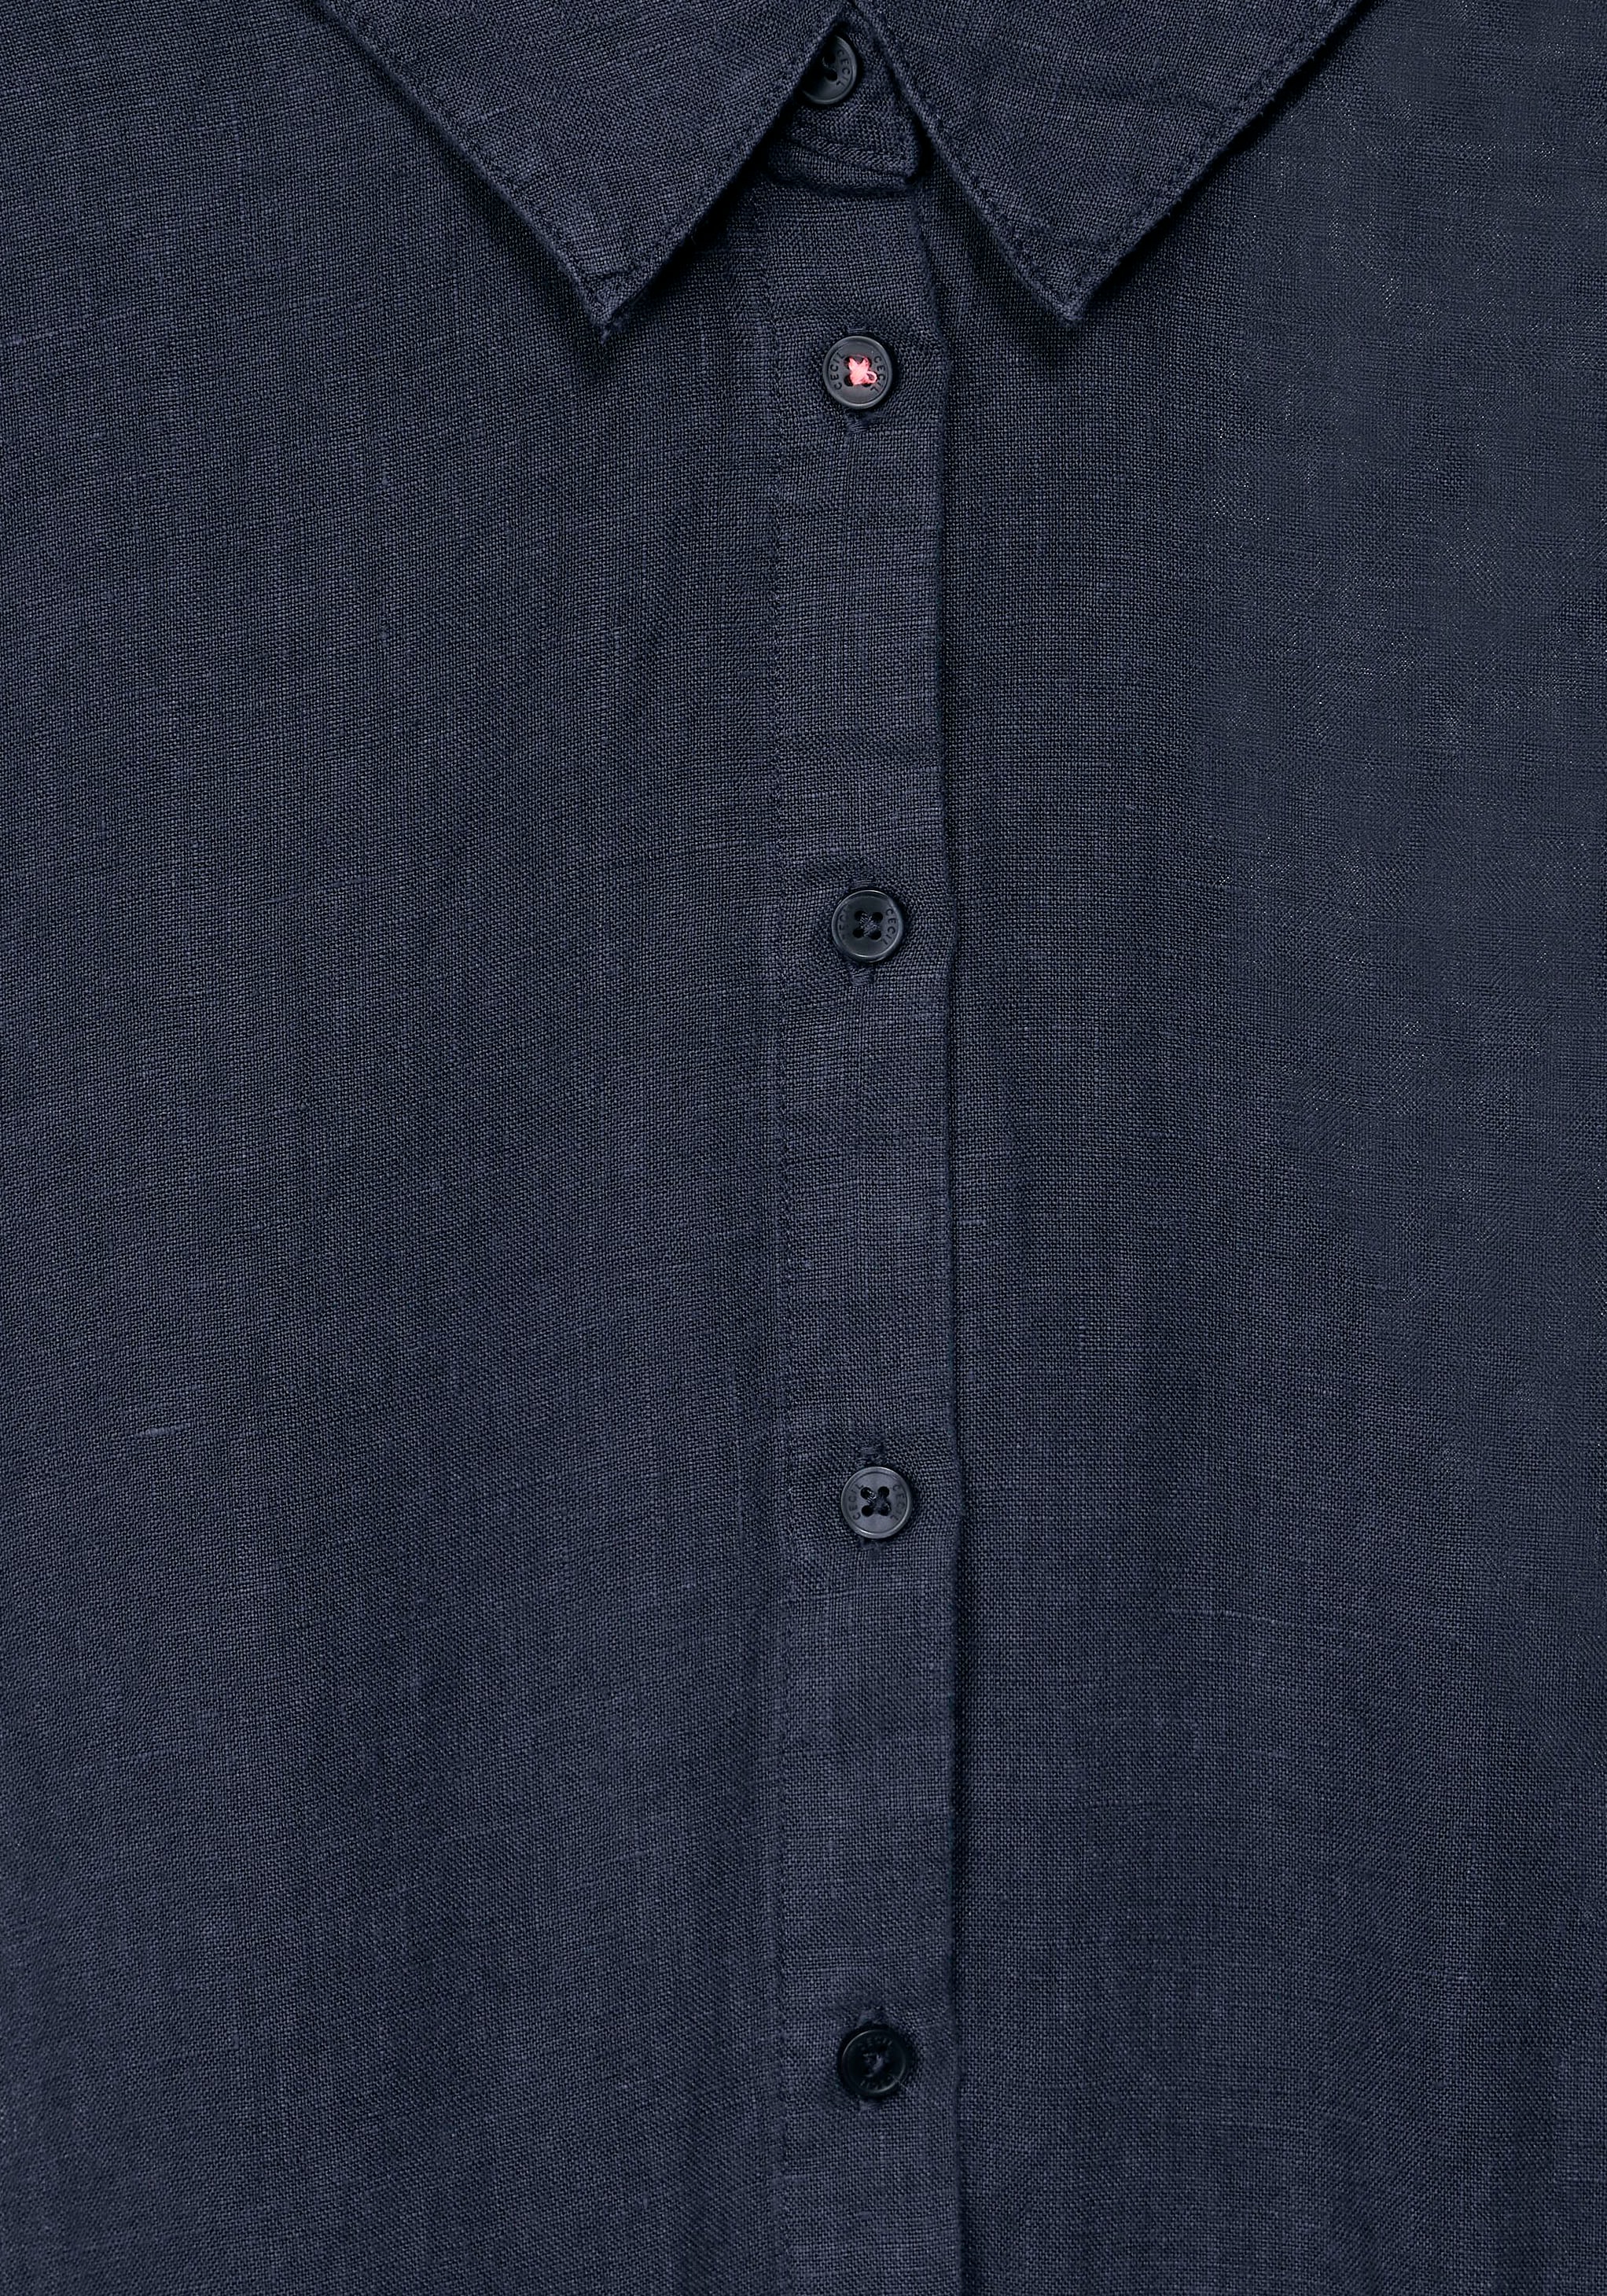 Cecil Hemdblusenkleid, mit kurzer Knopfleiste bei OTTOversand